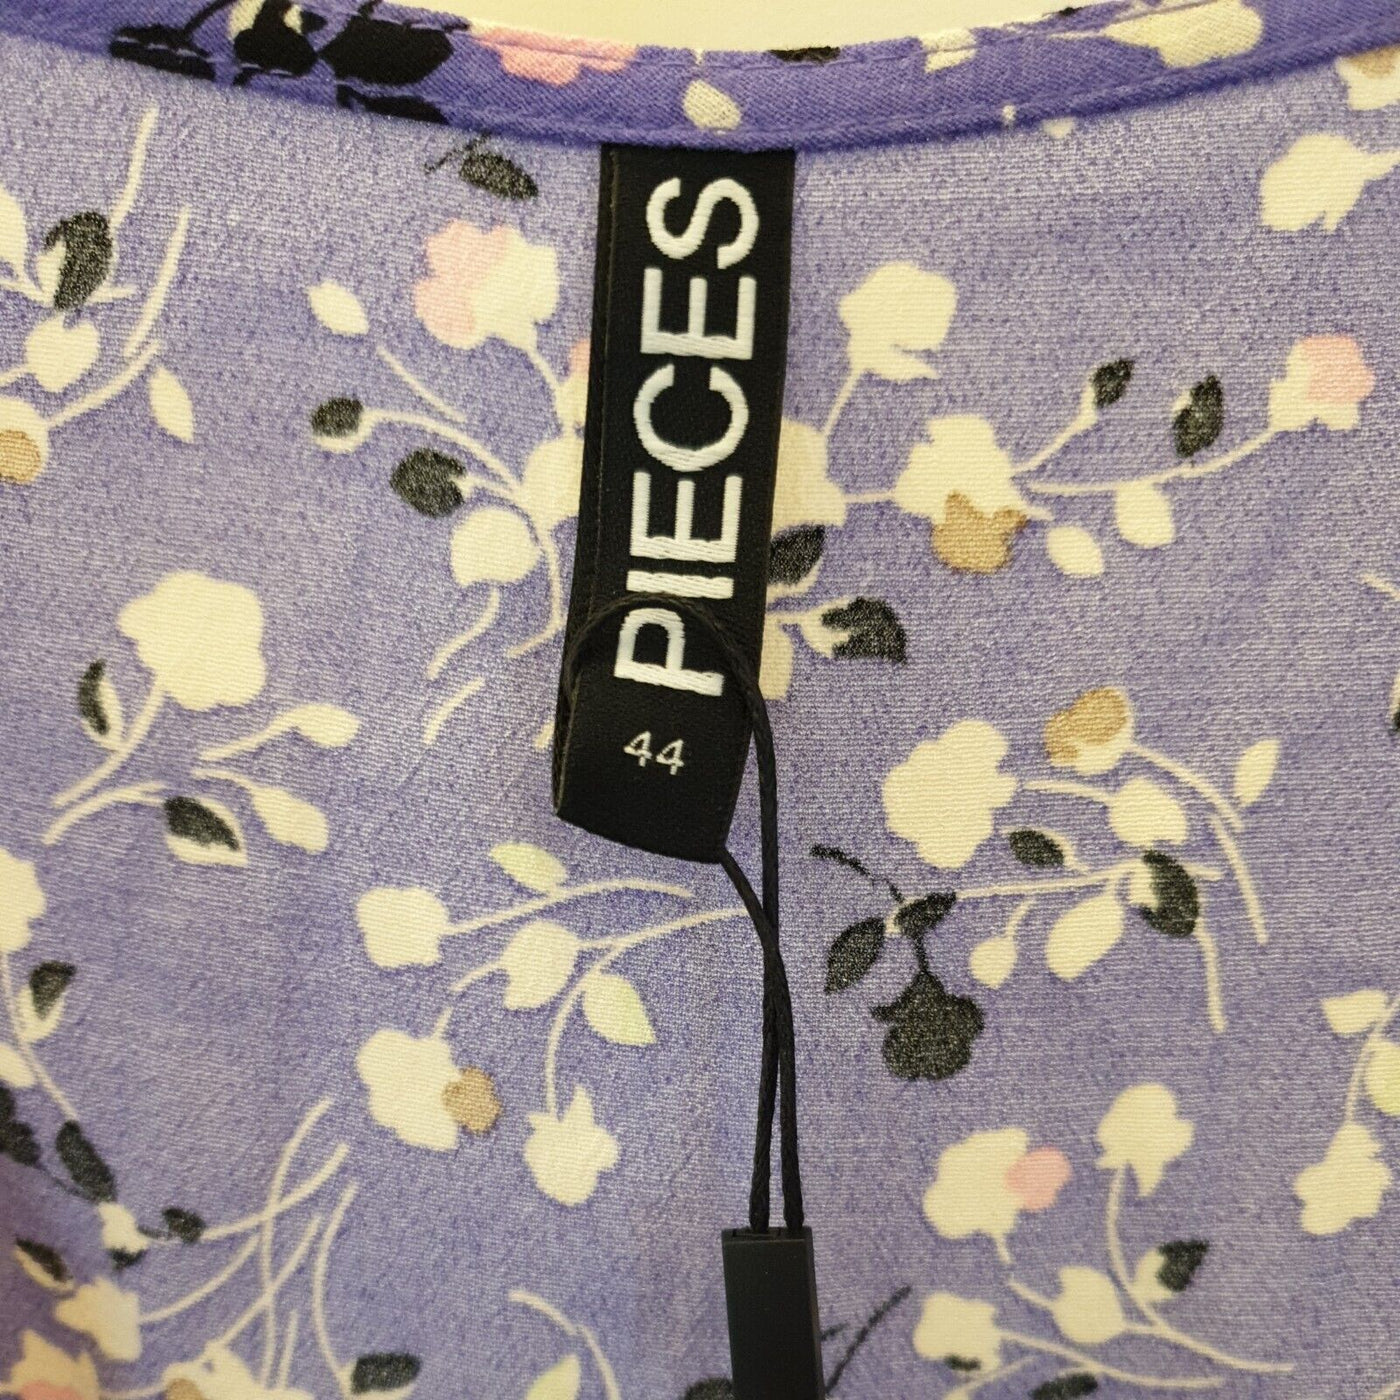 Pieces Purple Floral Dress Size 44****Ref V3